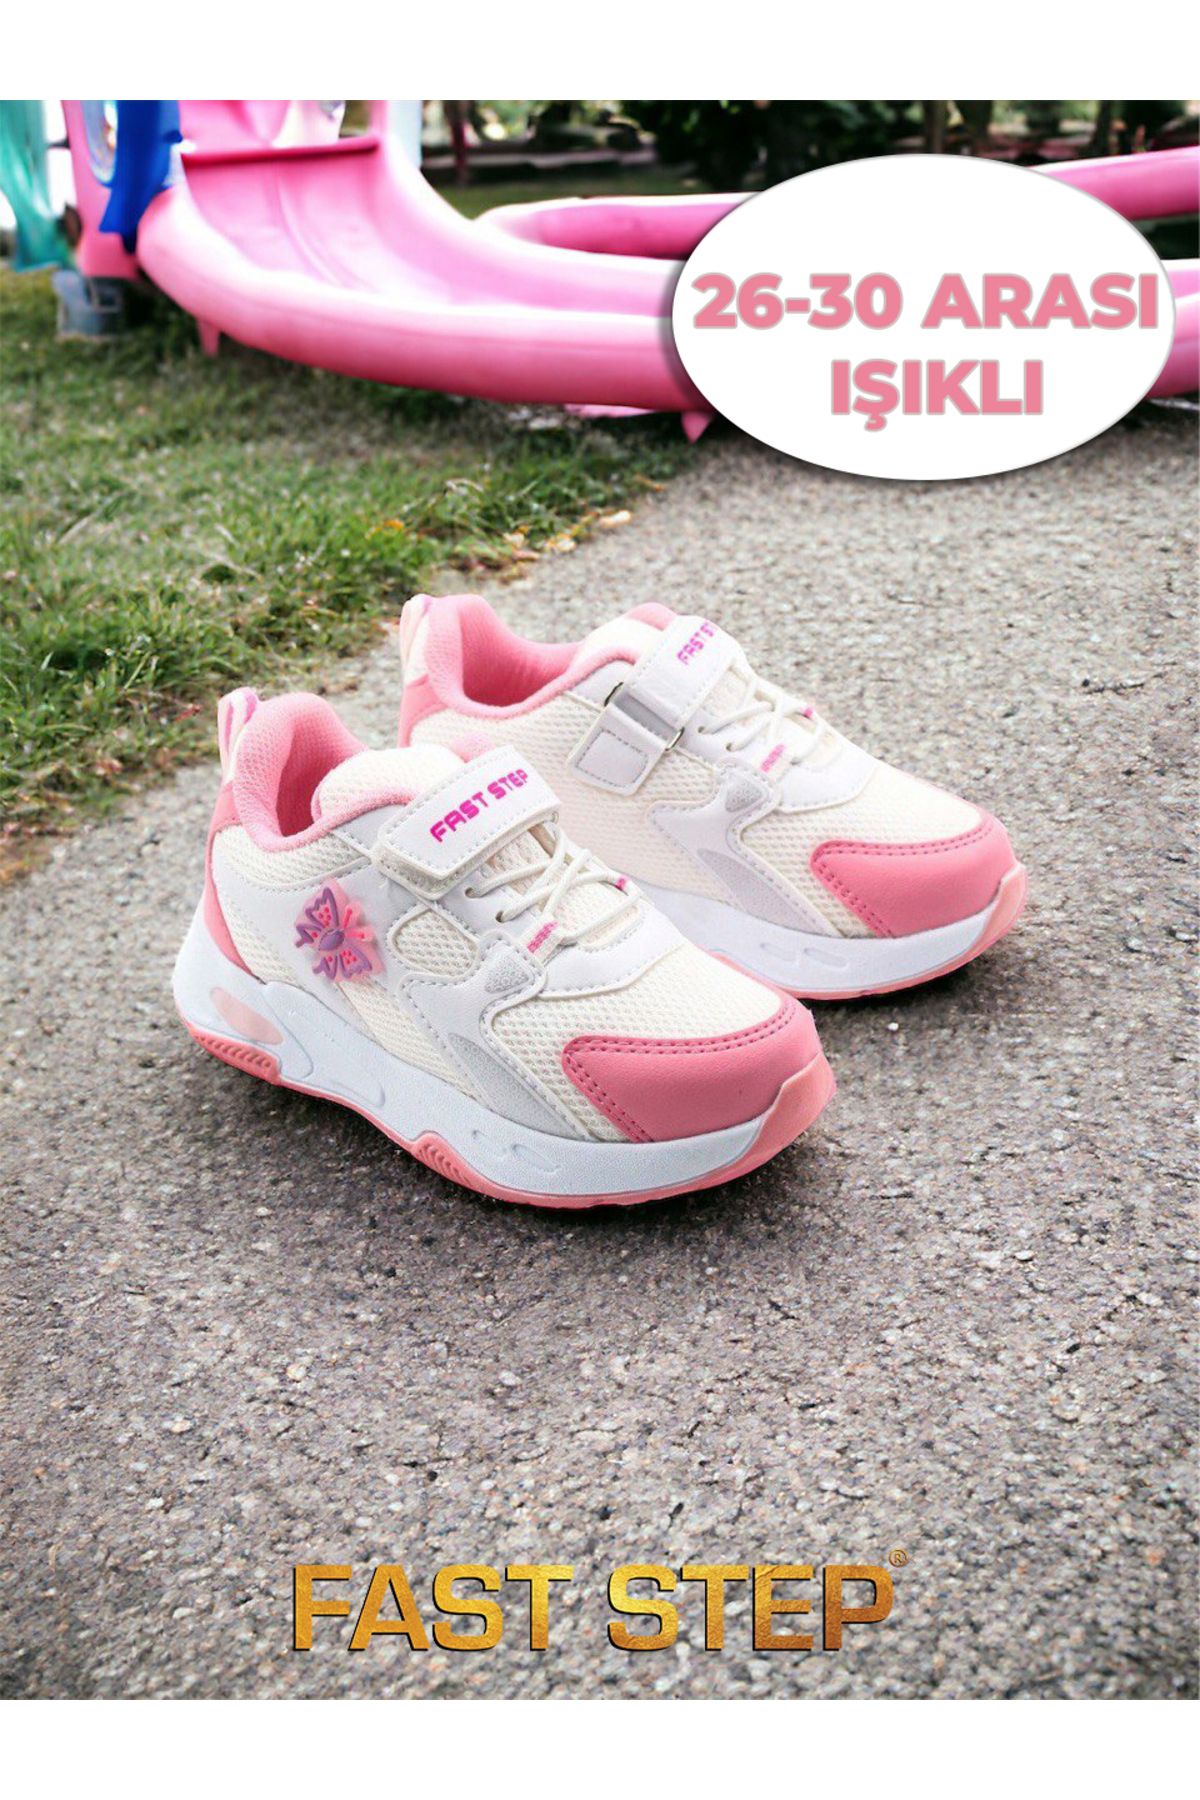 Fast Step Çocuk Spor Ayakkabı Anatomik Taban Hafif Sneaker Unisex Ayakkabı 461xca318